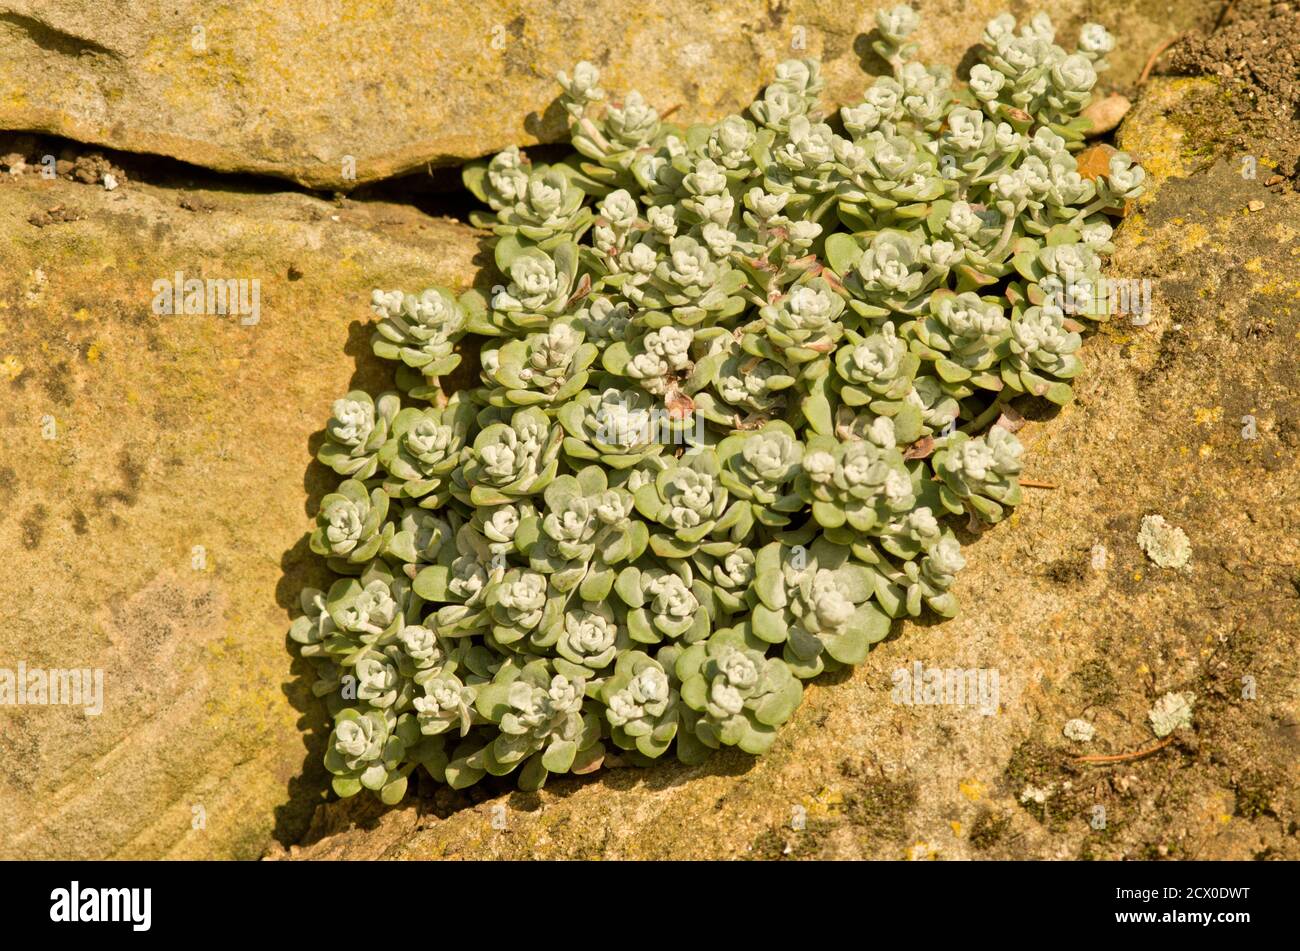 Sedum spathulifolium 'Cape Blanco' Stock Photo